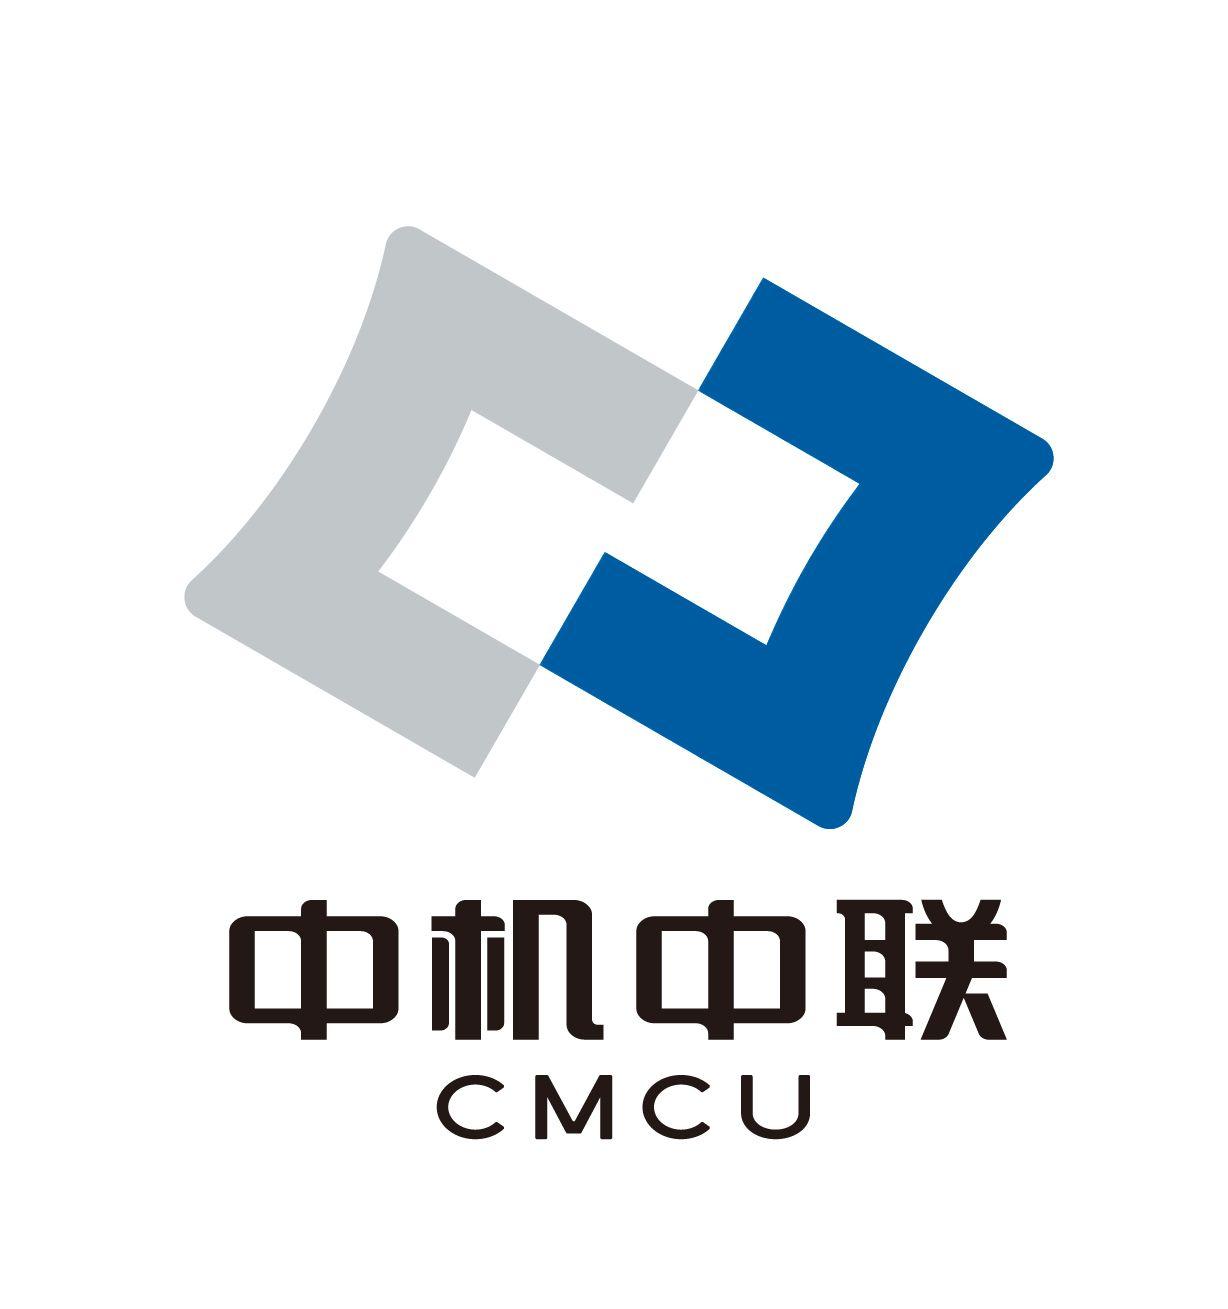 Ctdi Logo - Logo-CMCU